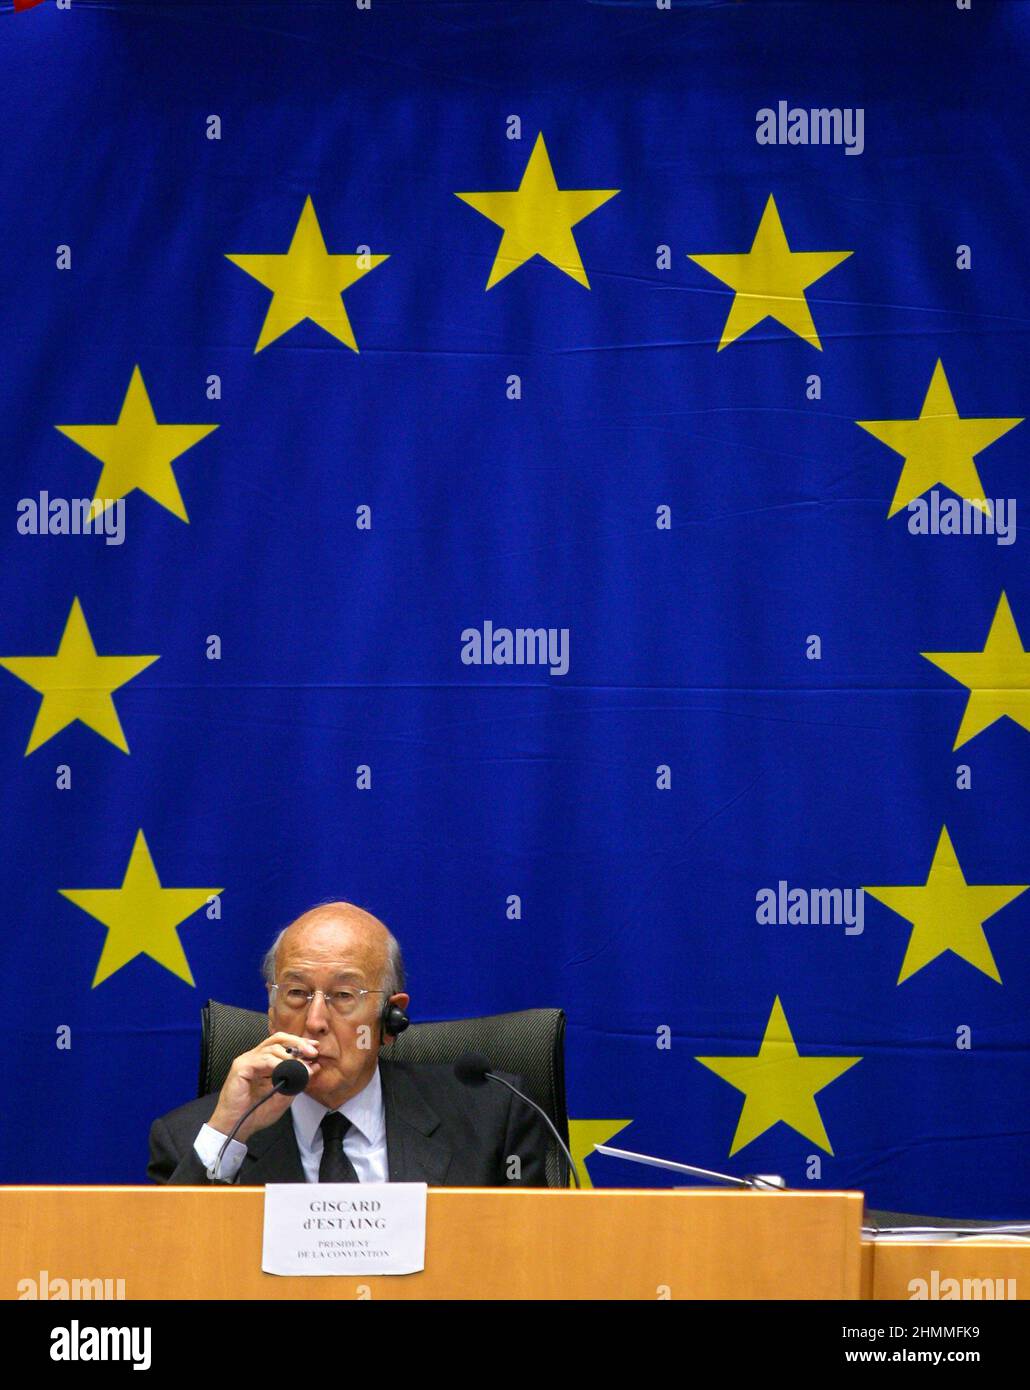 Belgio, Bruxelles, il 5 giugno 2003: Valry Giscard d'Estaing, Presidente della Convenzione europea, partecipa ad una Conferenza sul futuro dell'Europa in cui si doveva concordare un trattato che istituiva una Costituzione per l'Europa. Valry Giscard d'Estaing, Presidente della Convenzione europea Foto Stock